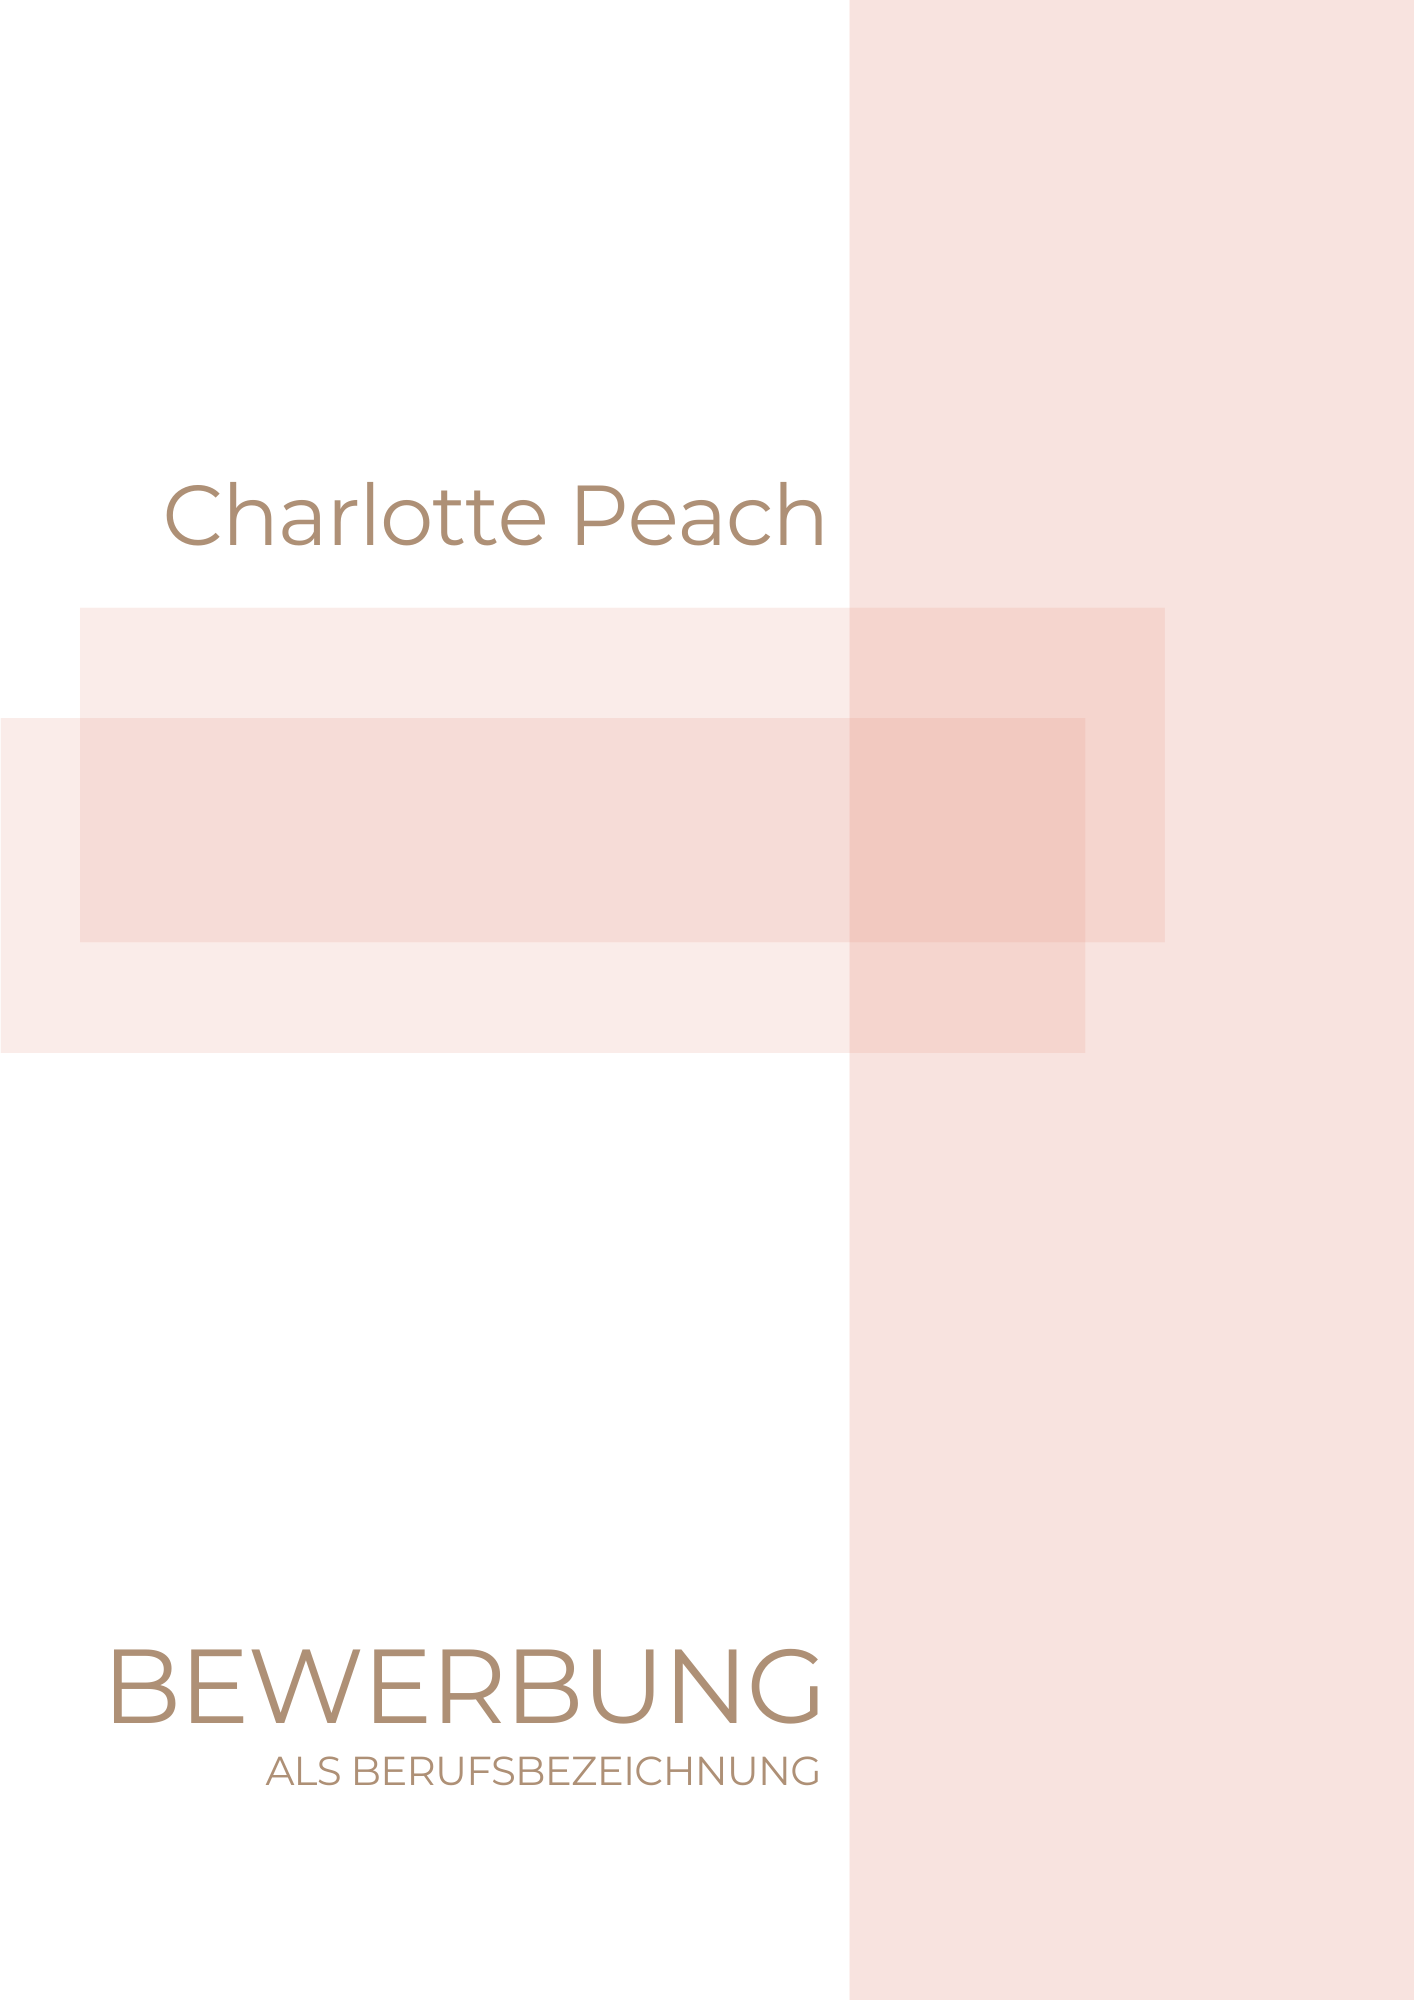 Bewerbungsvorlagen Set Charlotte Peach